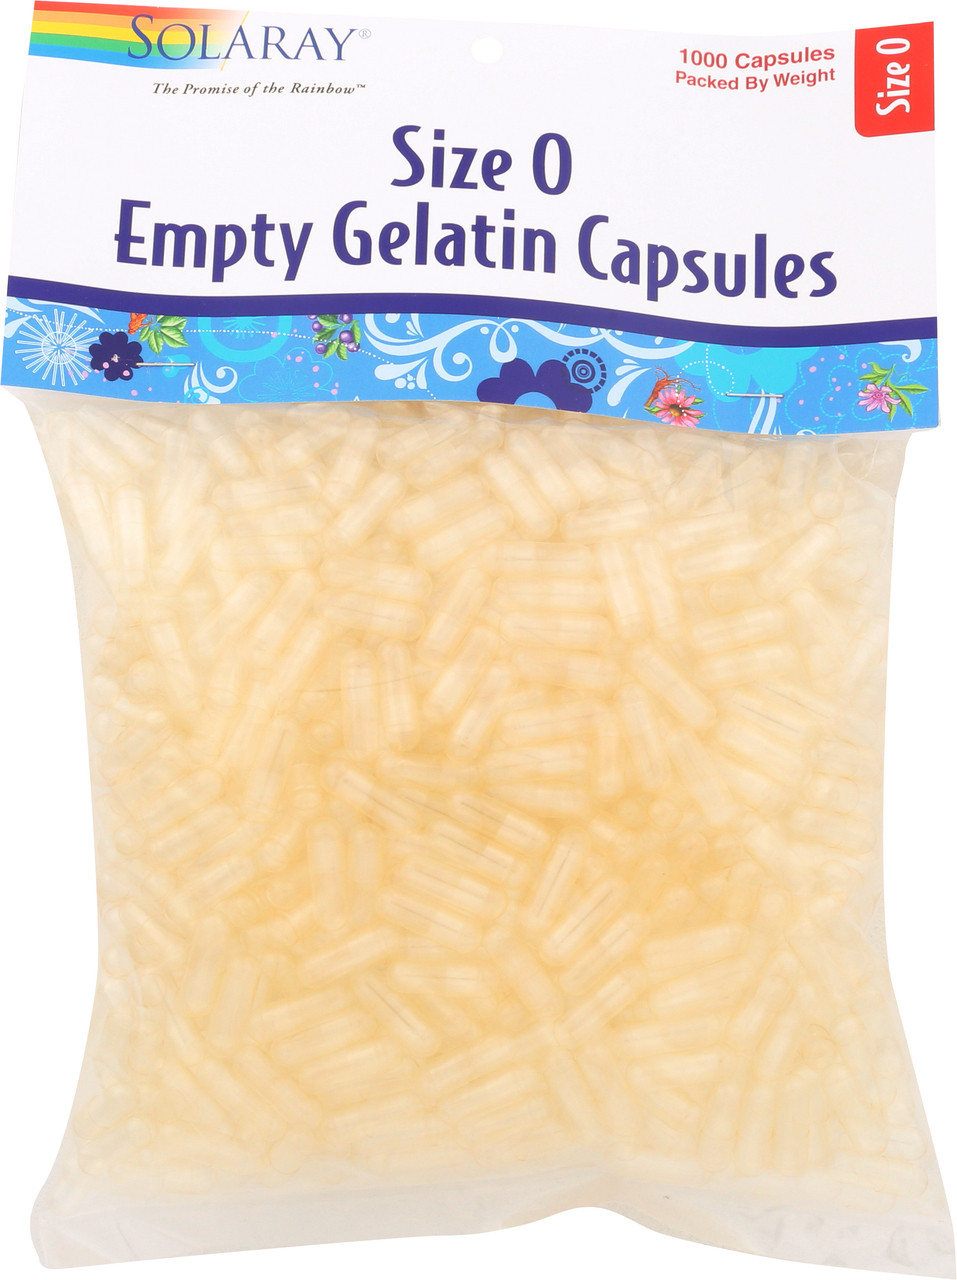 Empty Gelatin Capsules Size 0 1000 Capsules